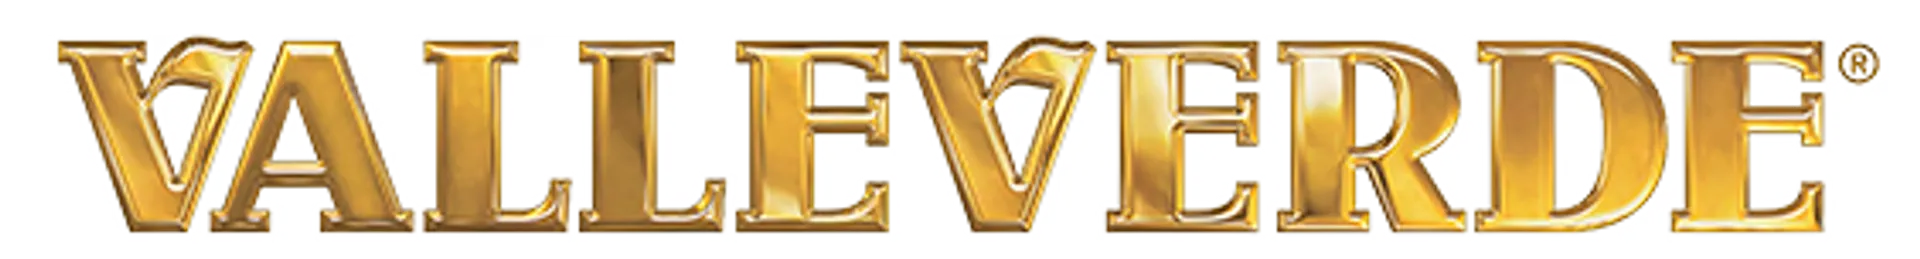 VALLEVERDE logo